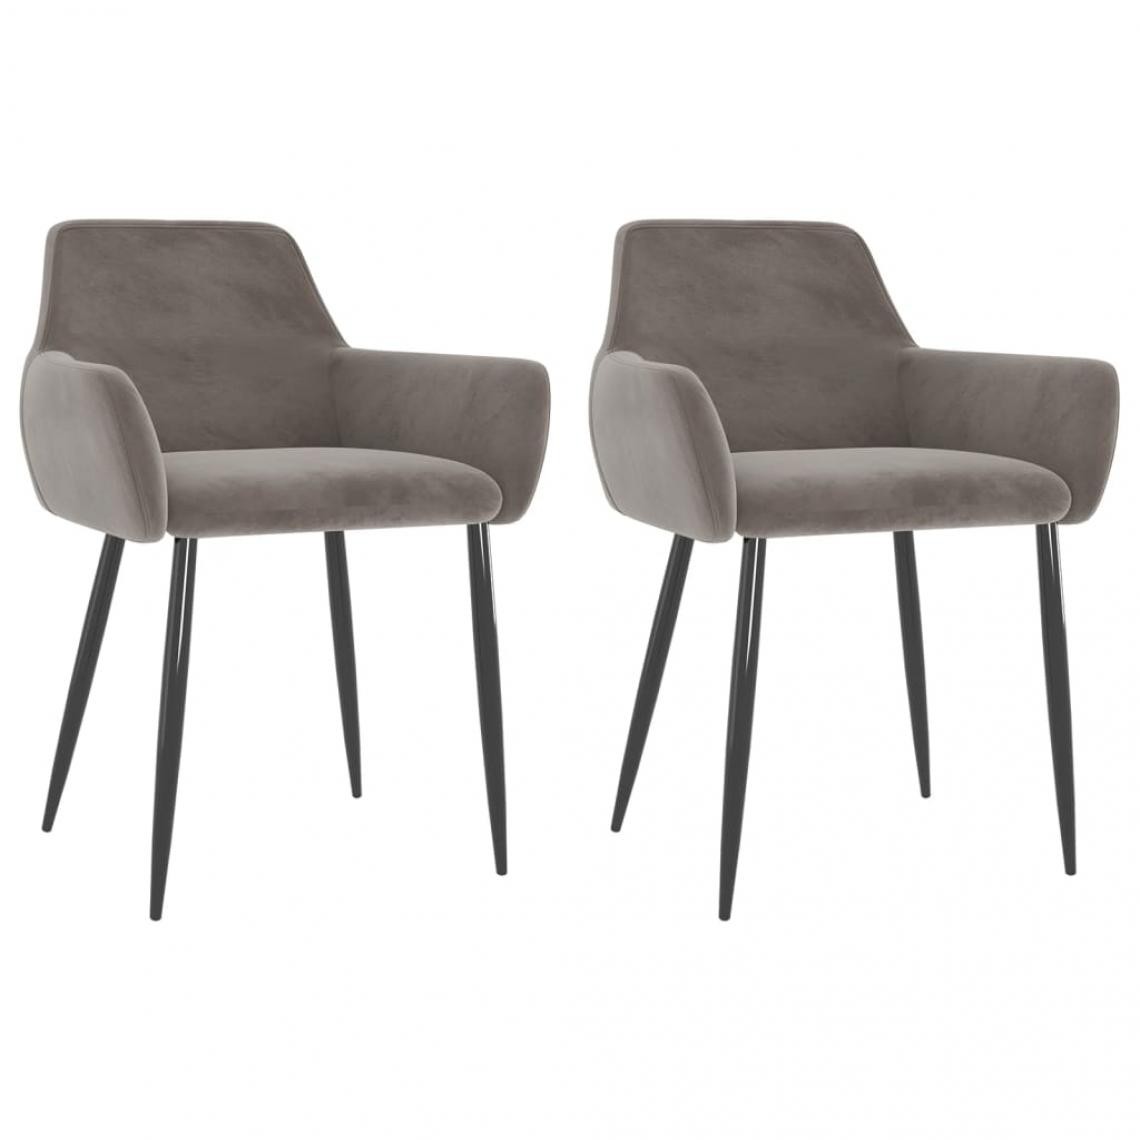 Decoshop26 - Lot de 2 chaises de salle à manger cuisine design moderne velours gris clair CDS020509 - Chaises